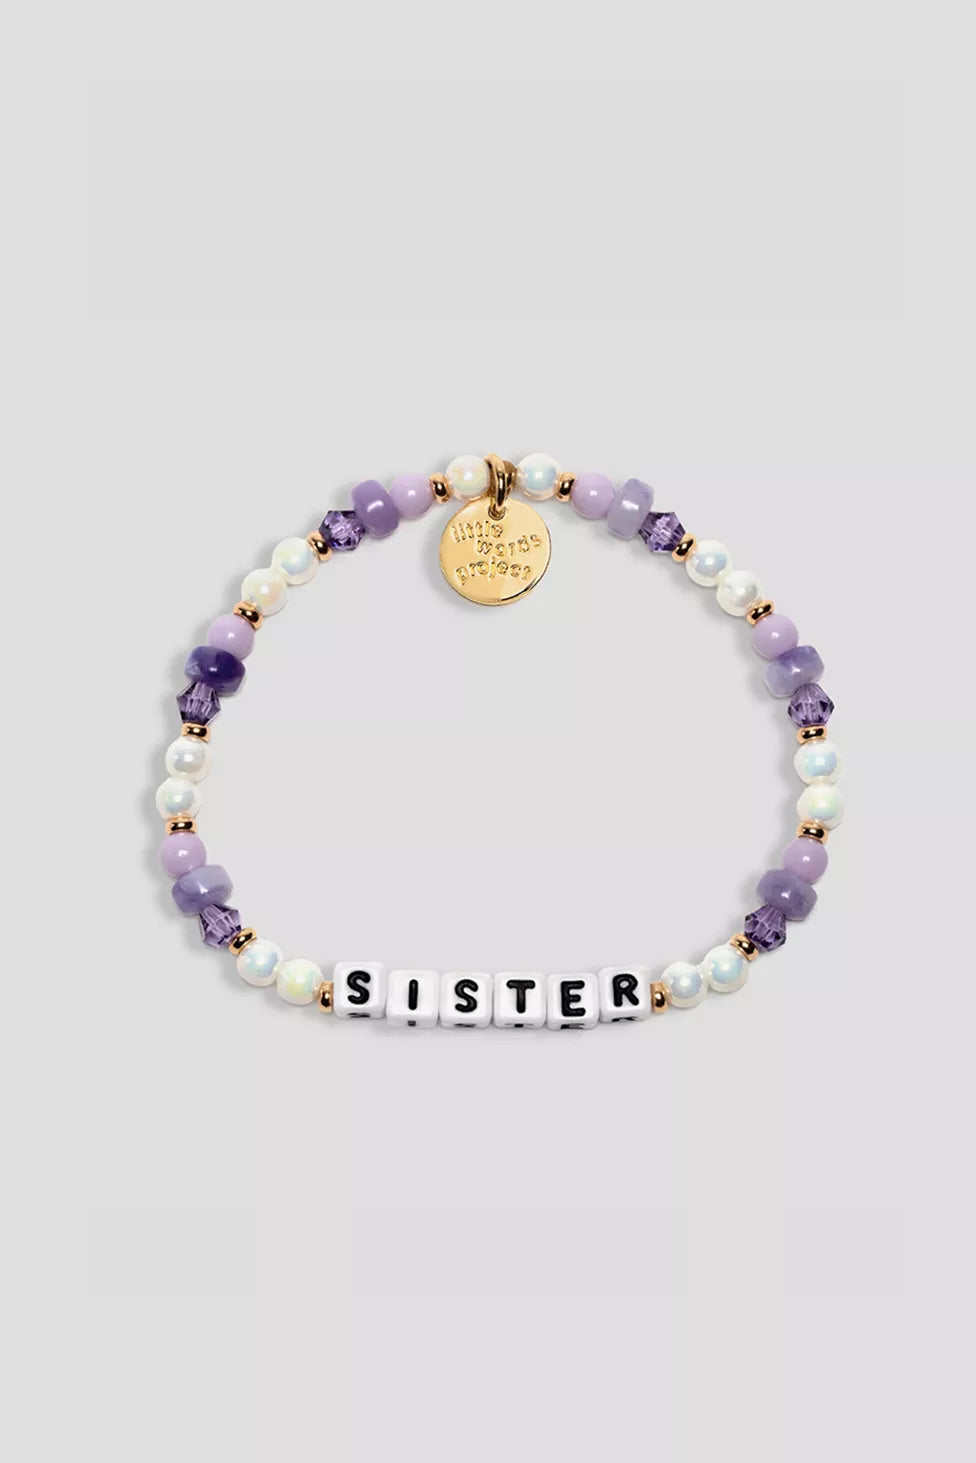 SISTERS- Family Bracelet